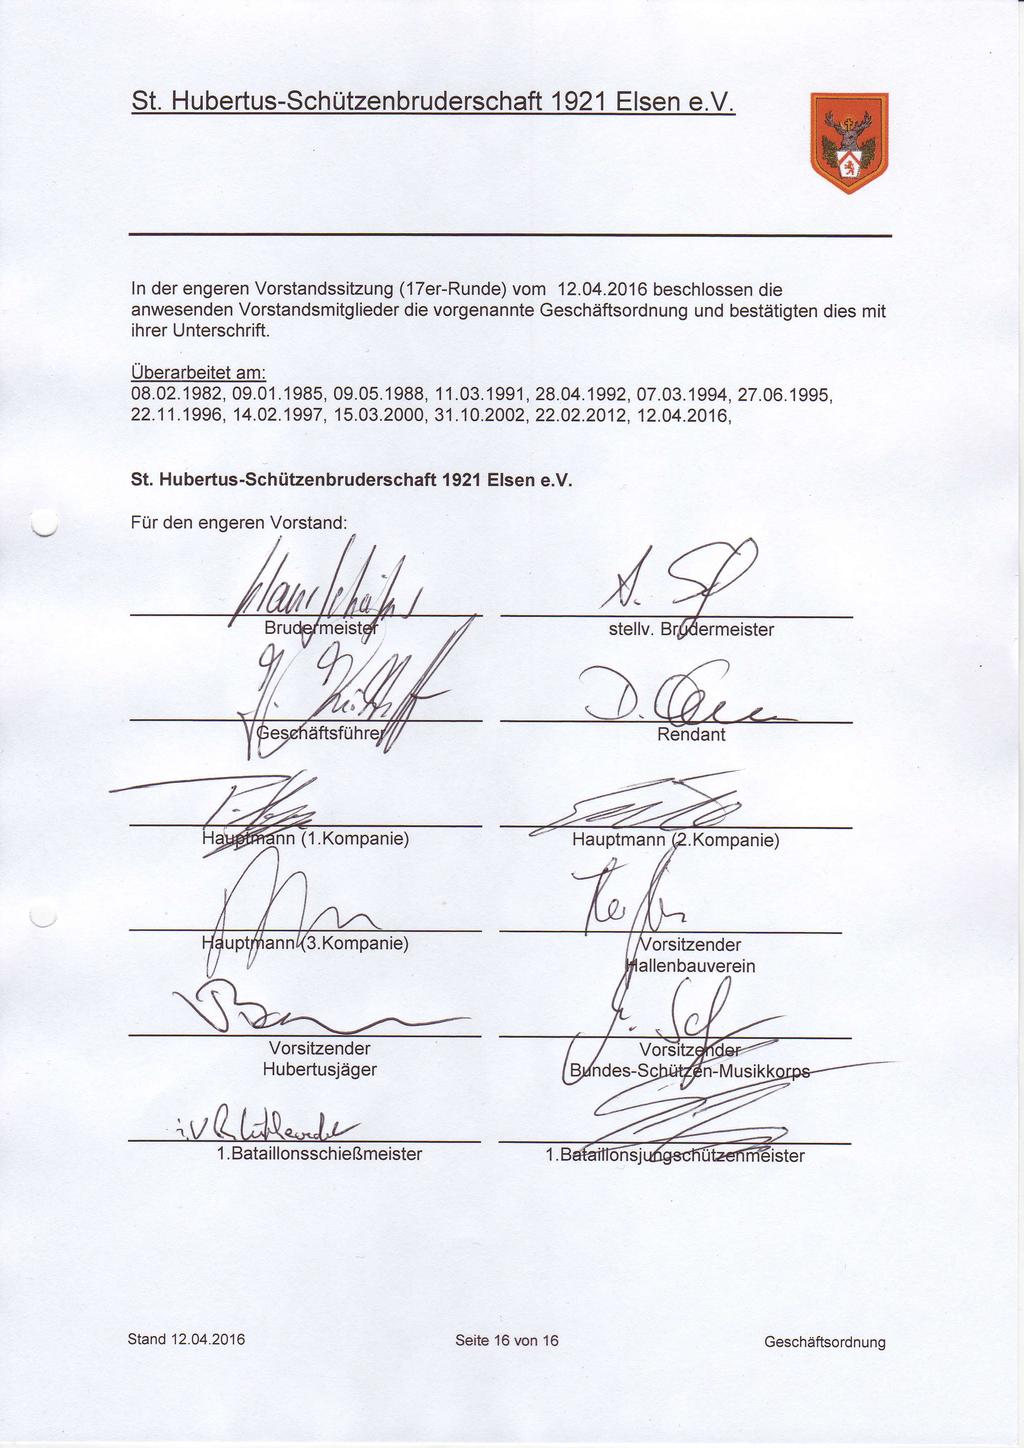 ln der engeren Vorstandssitzung (17er-Runde) vom 12.04.2016 beschlossen die anwesenden Vorstandsmitglieder die vorgenannte Geschäftsordnung und bestätigten dies mit ihrer Unterschrift.